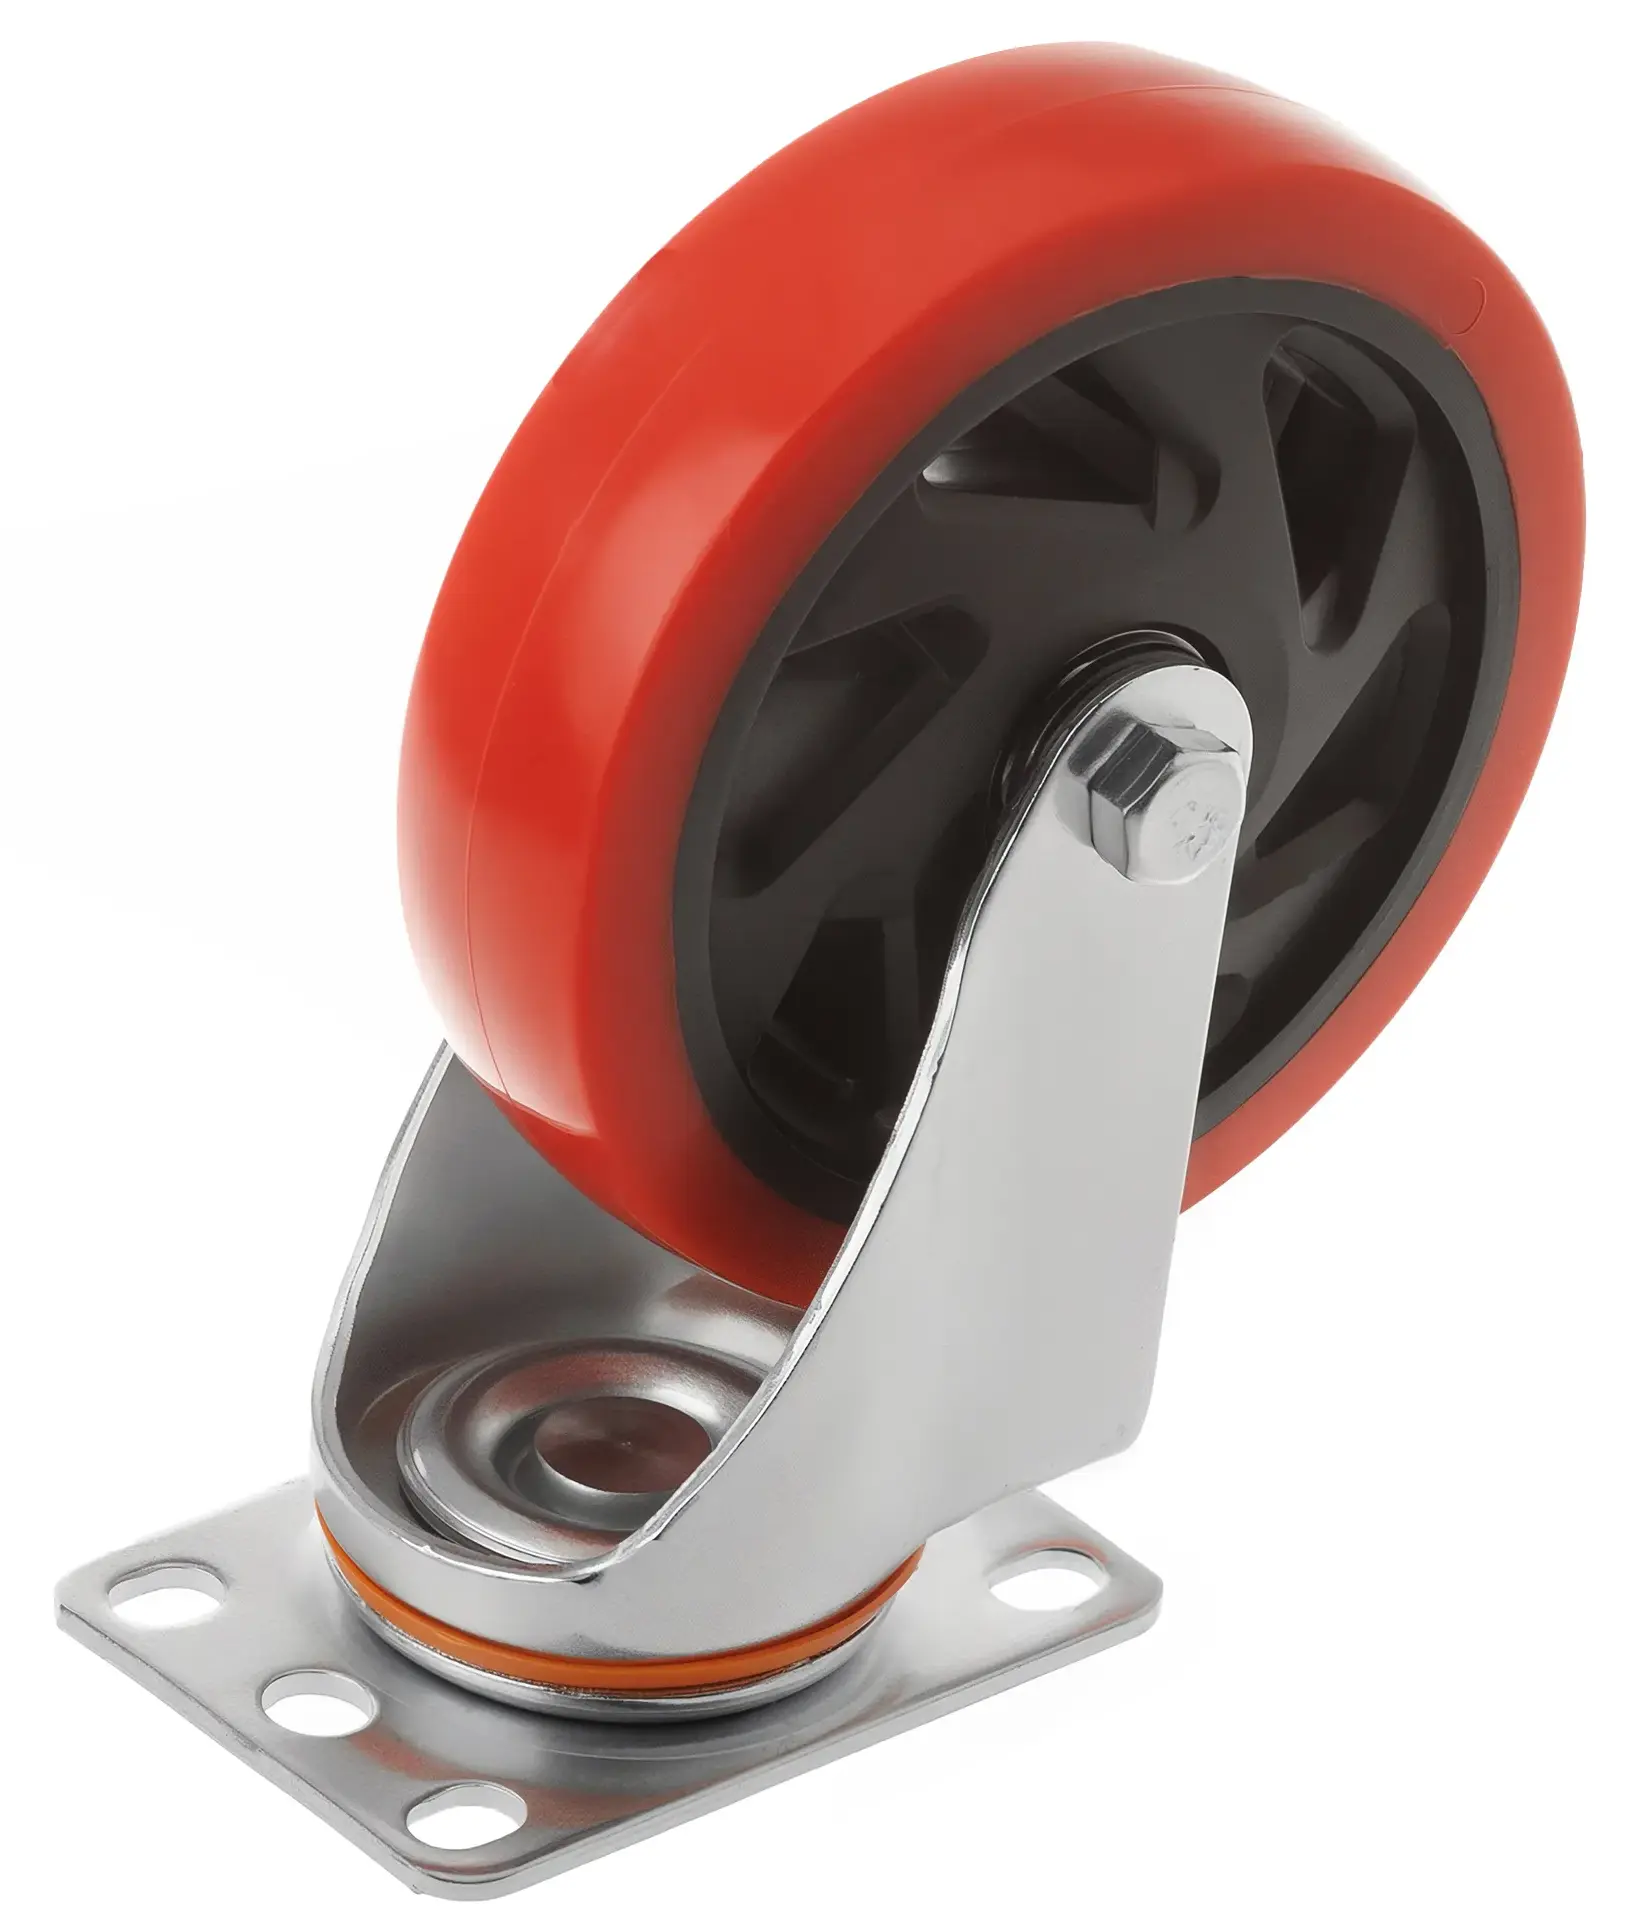 Полипропиленовое красное колесо 125 мм (поворотная площадка, двойной шарикоподшипник) - 330125S